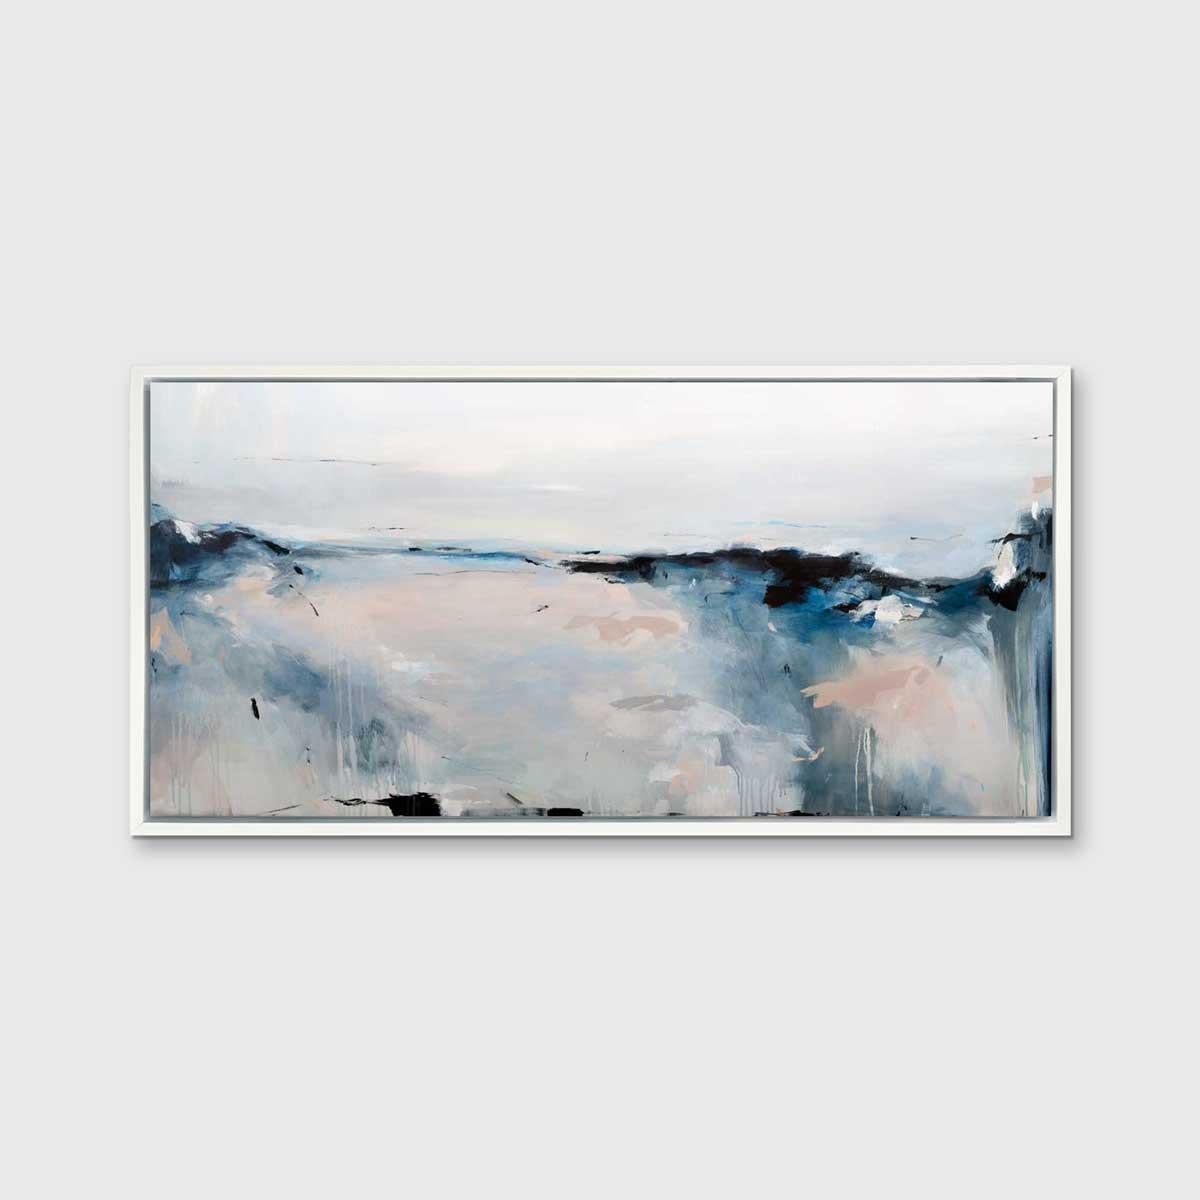 Dieser abstrakte Druck in limitierter Auflage von Kelly Rossetti zeigt eine kühle Farbpalette und eine abstrahierte Landschaftskomposition im Querformat. Die lockeren, ausdrucksstarken Pinselstriche des Künstlers fügen sich in tiefblauen, grauen und